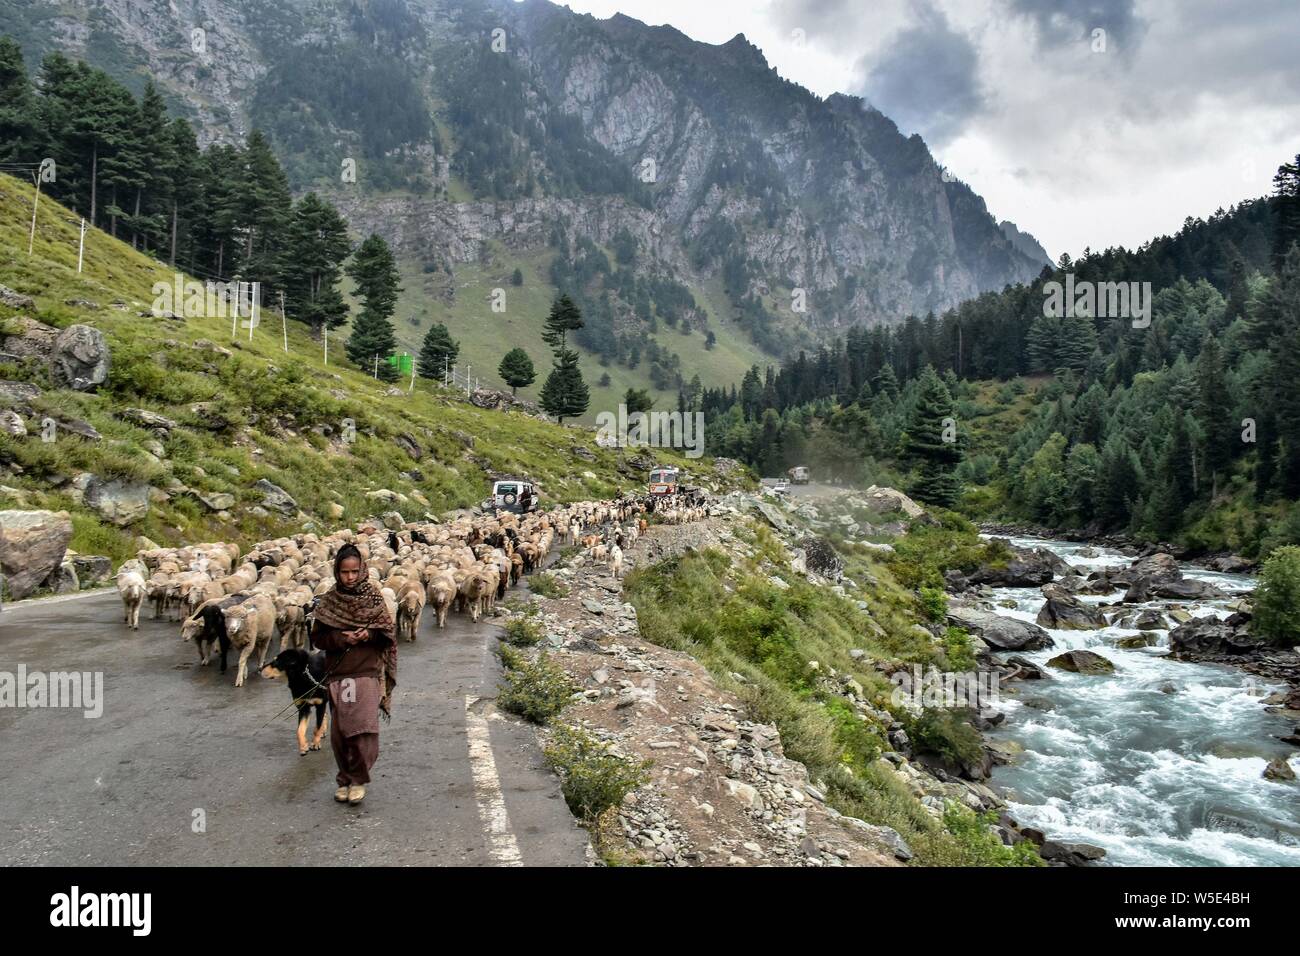 Juli 28, 2019, Kaschmir, J&K, Indien: ein Kaschmirischen nomad Mädchen geht mit ihrer Herde Schafe an einem bewölkten Tag bei der Tourist Resort Sonamarg etwa 90 km von Srinagar, die Hauptstadt von J&K, Indien. Wie der Regen für den vierten Tag am Sonntag fortgesetzt, der Himmel bewölkt in der zweiten Hälfte des Tages blieb. Das Wetter Abteilung hat mehr Niederschlag in vielen Teilen des Tals in den nächsten 24 Stunden vorhergesagt. Credit: Saqib Majeed/SOPA Images/ZUMA Draht/Alamy leben Nachrichten Stockfoto